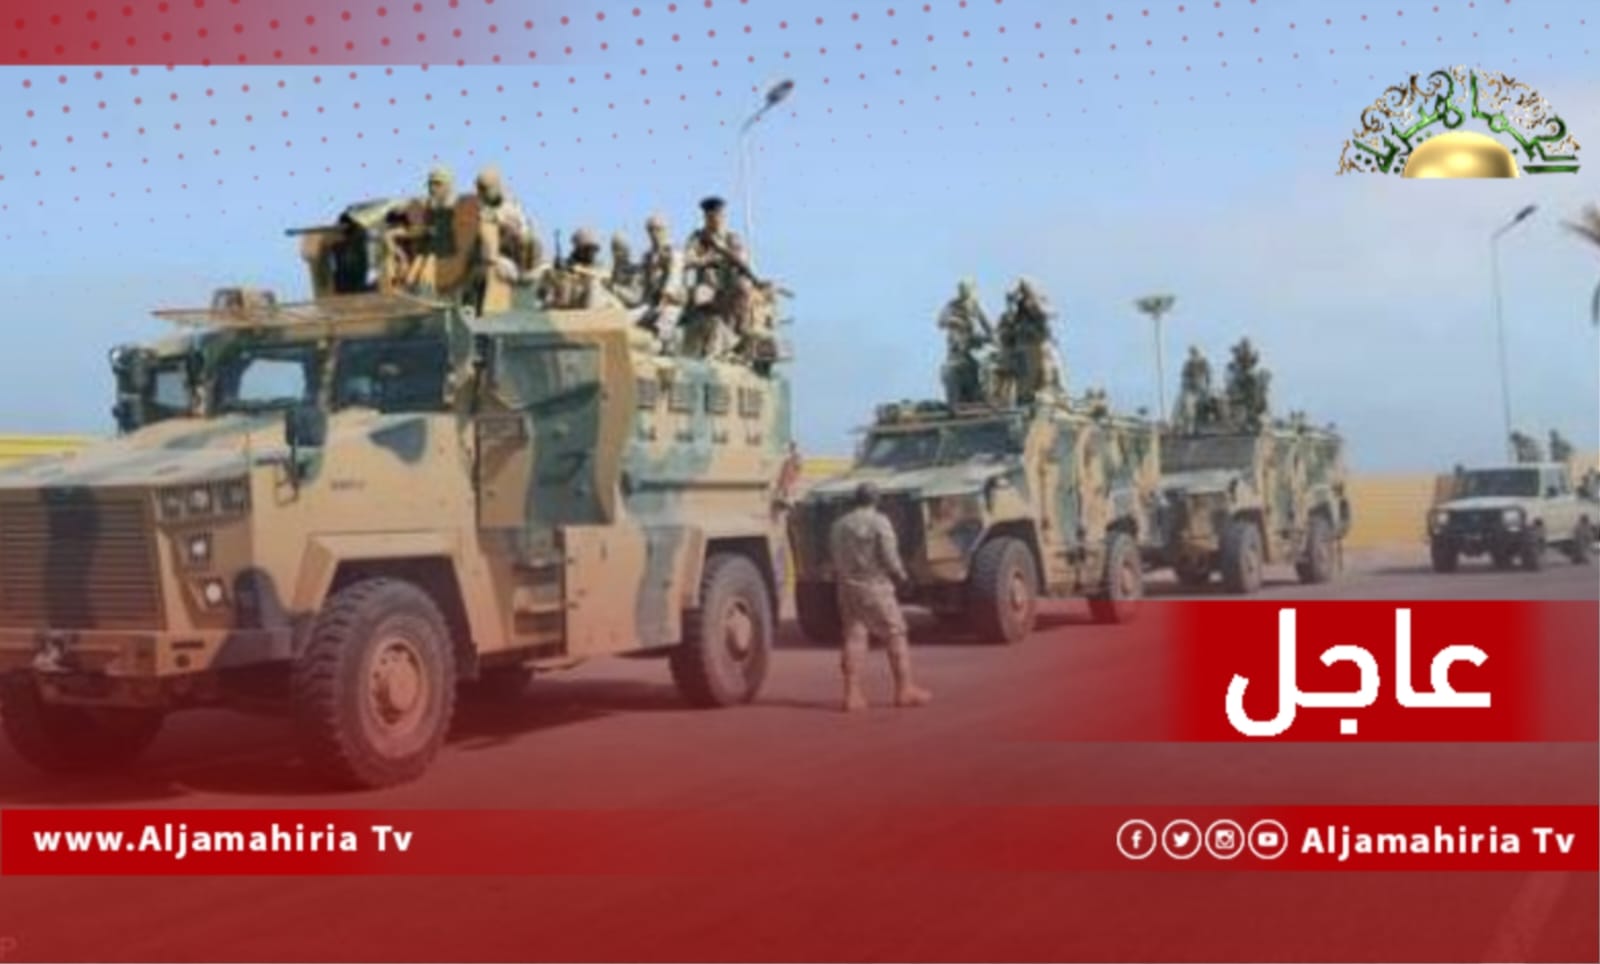 عاجل// مصادر إعلامية: مجموعات مسلحة تابعة لفتحي باشاغا انسحبت من معسكر 7 أبريل ومنطقة بوابة جبس في طرابلس